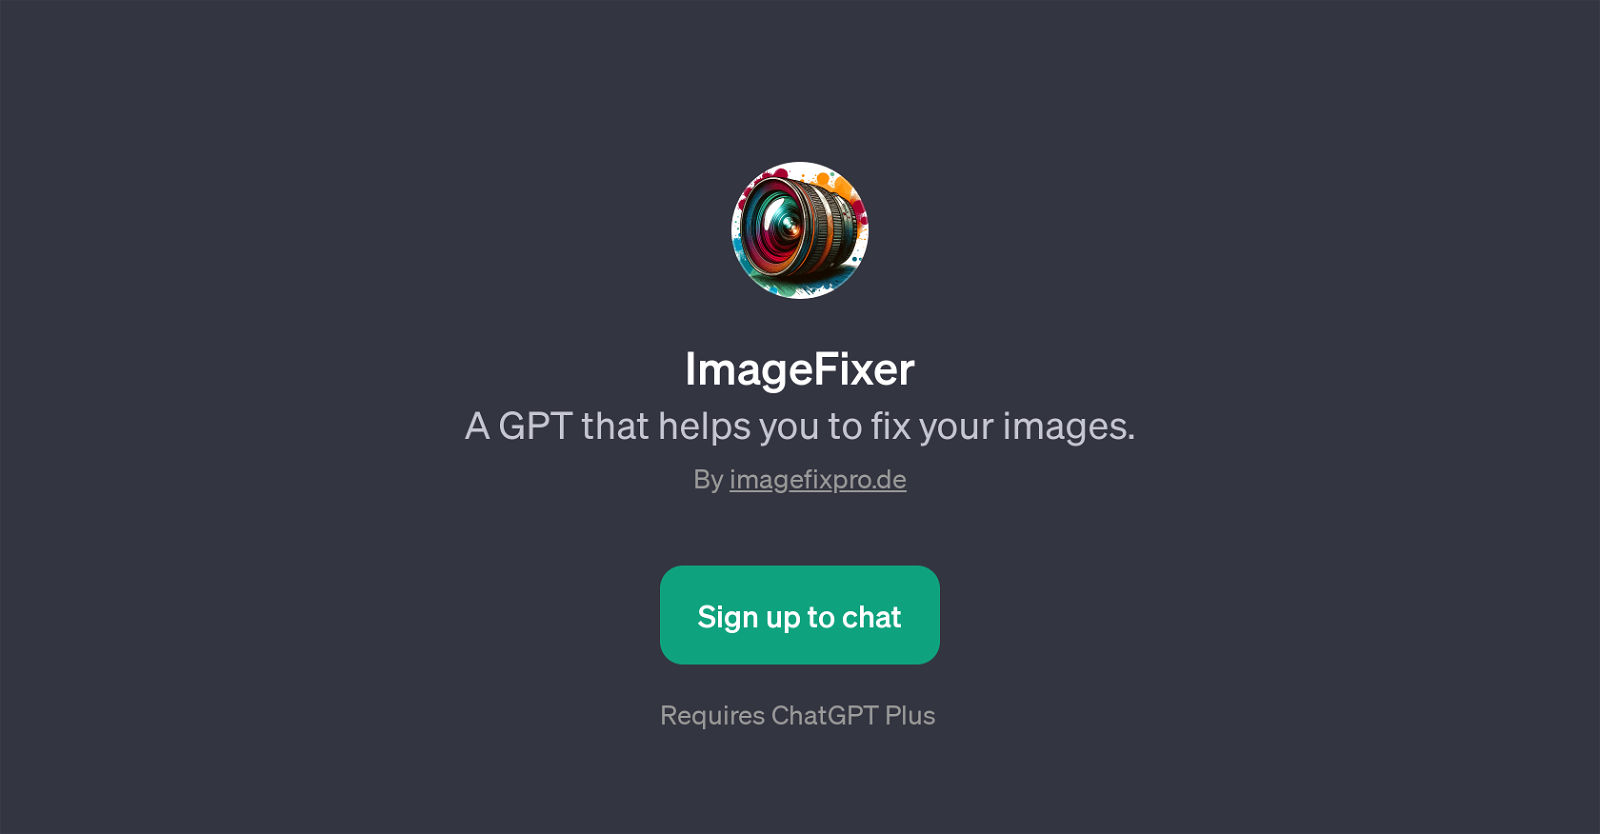 ImageFixer website